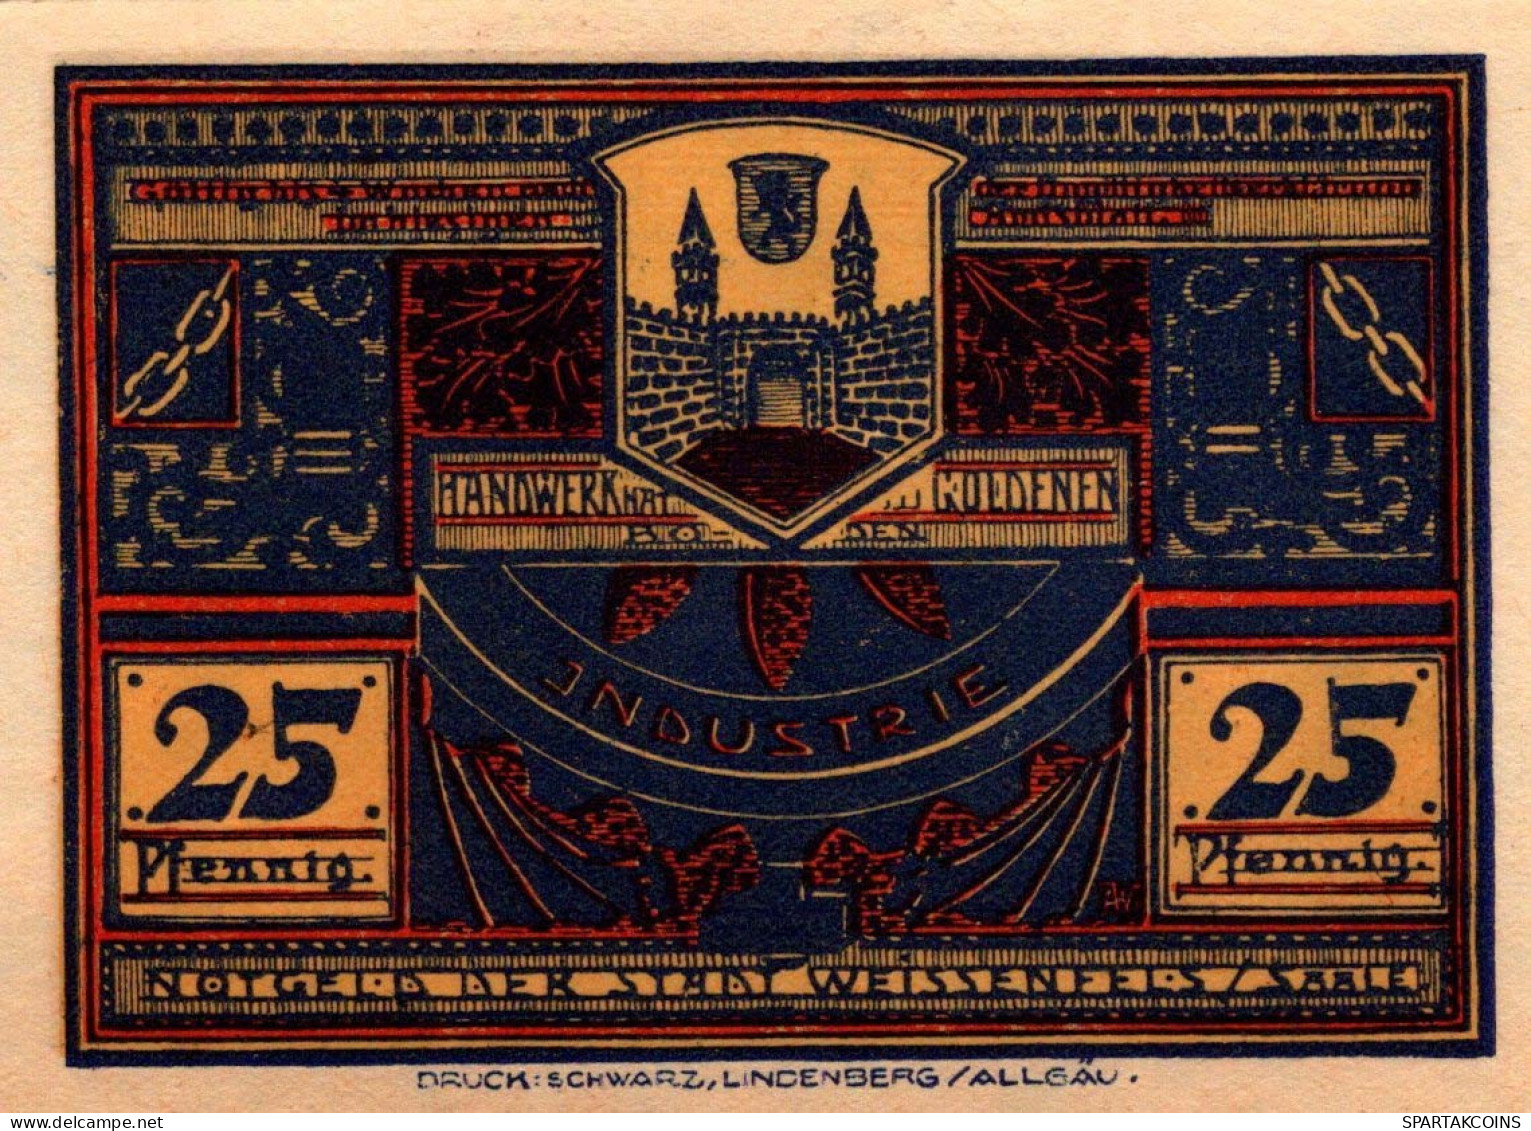 25 PFENNIG 1921 Stadt WEISSENFELS Saxony UNC DEUTSCHLAND Notgeld Banknote #PI010 - [11] Emissions Locales